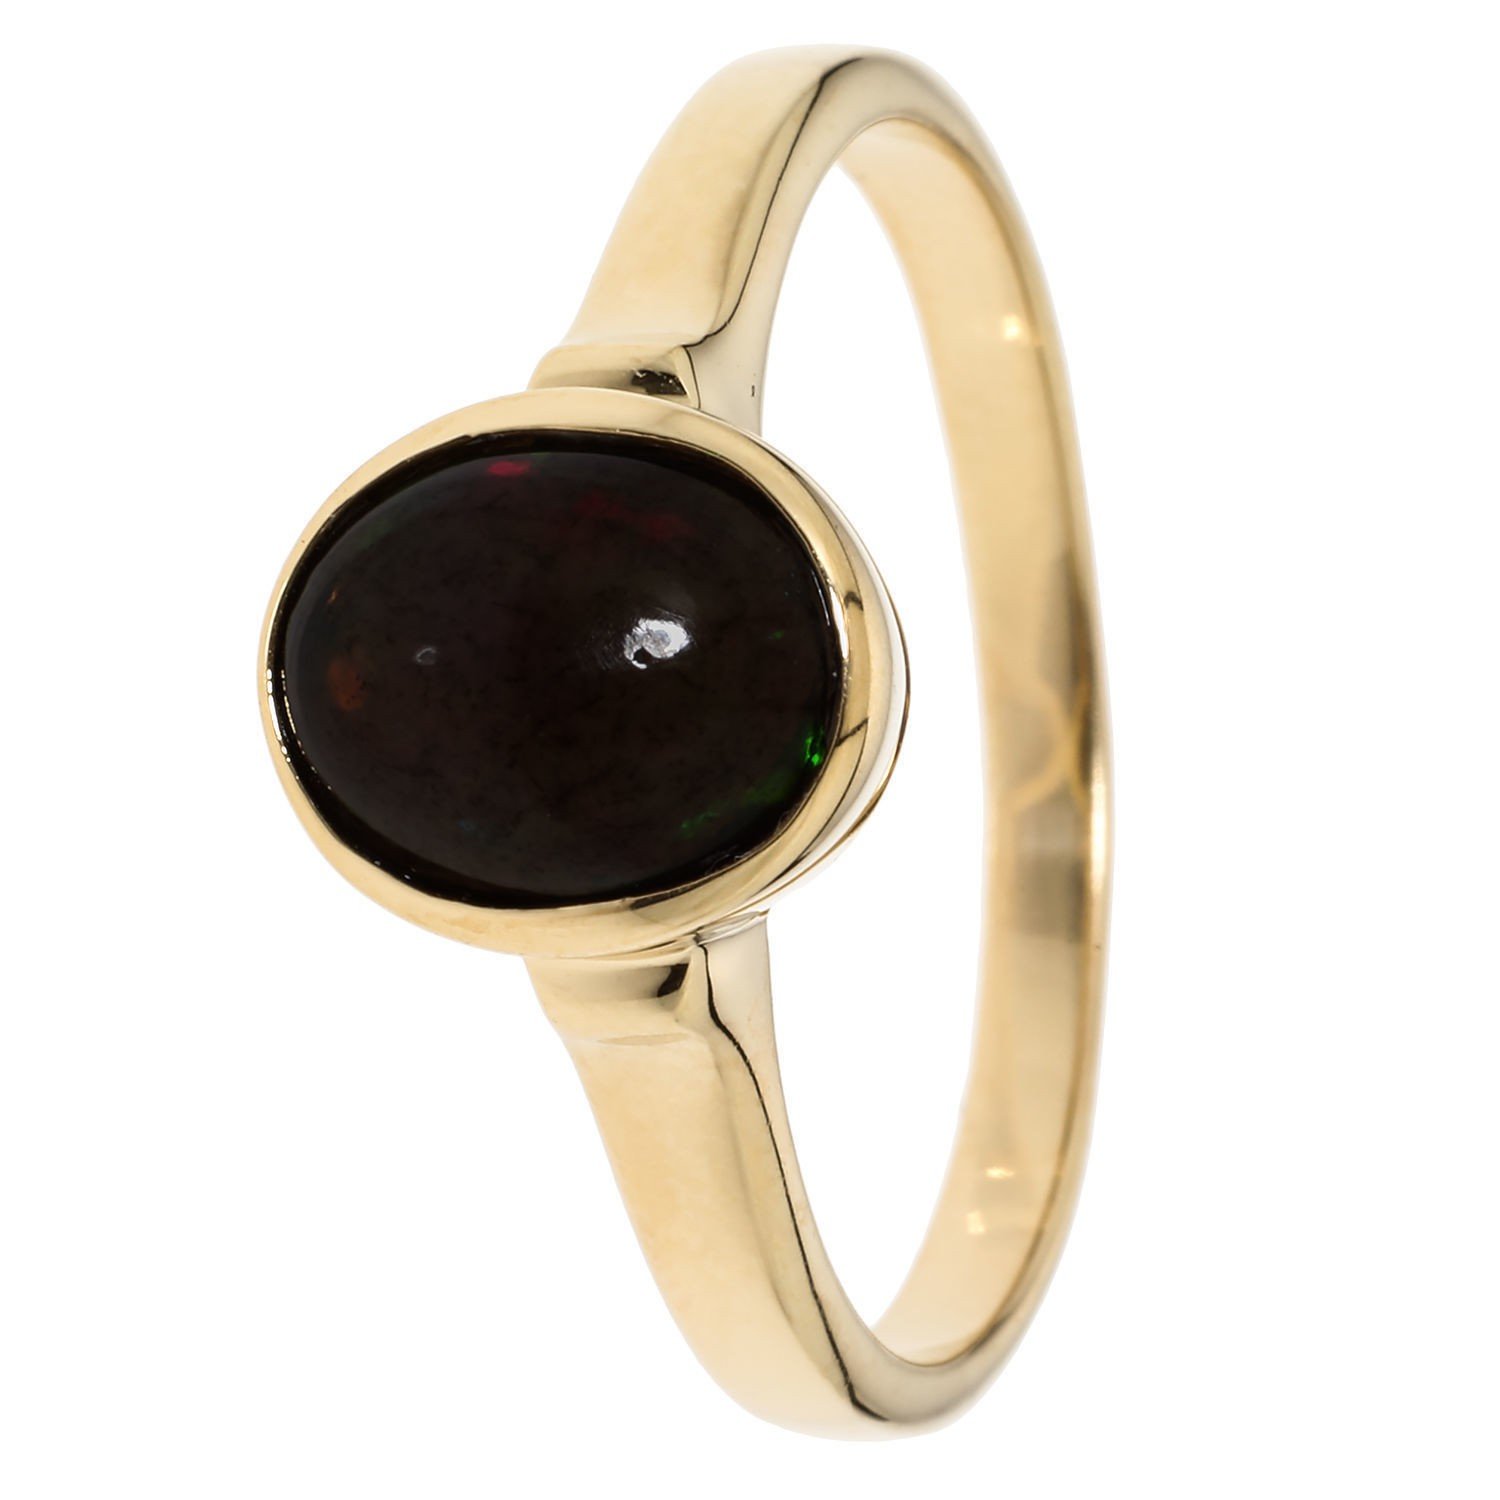 Schwarzer Opal-Ring: Schmuck von Christian Materne | CHANNEL21